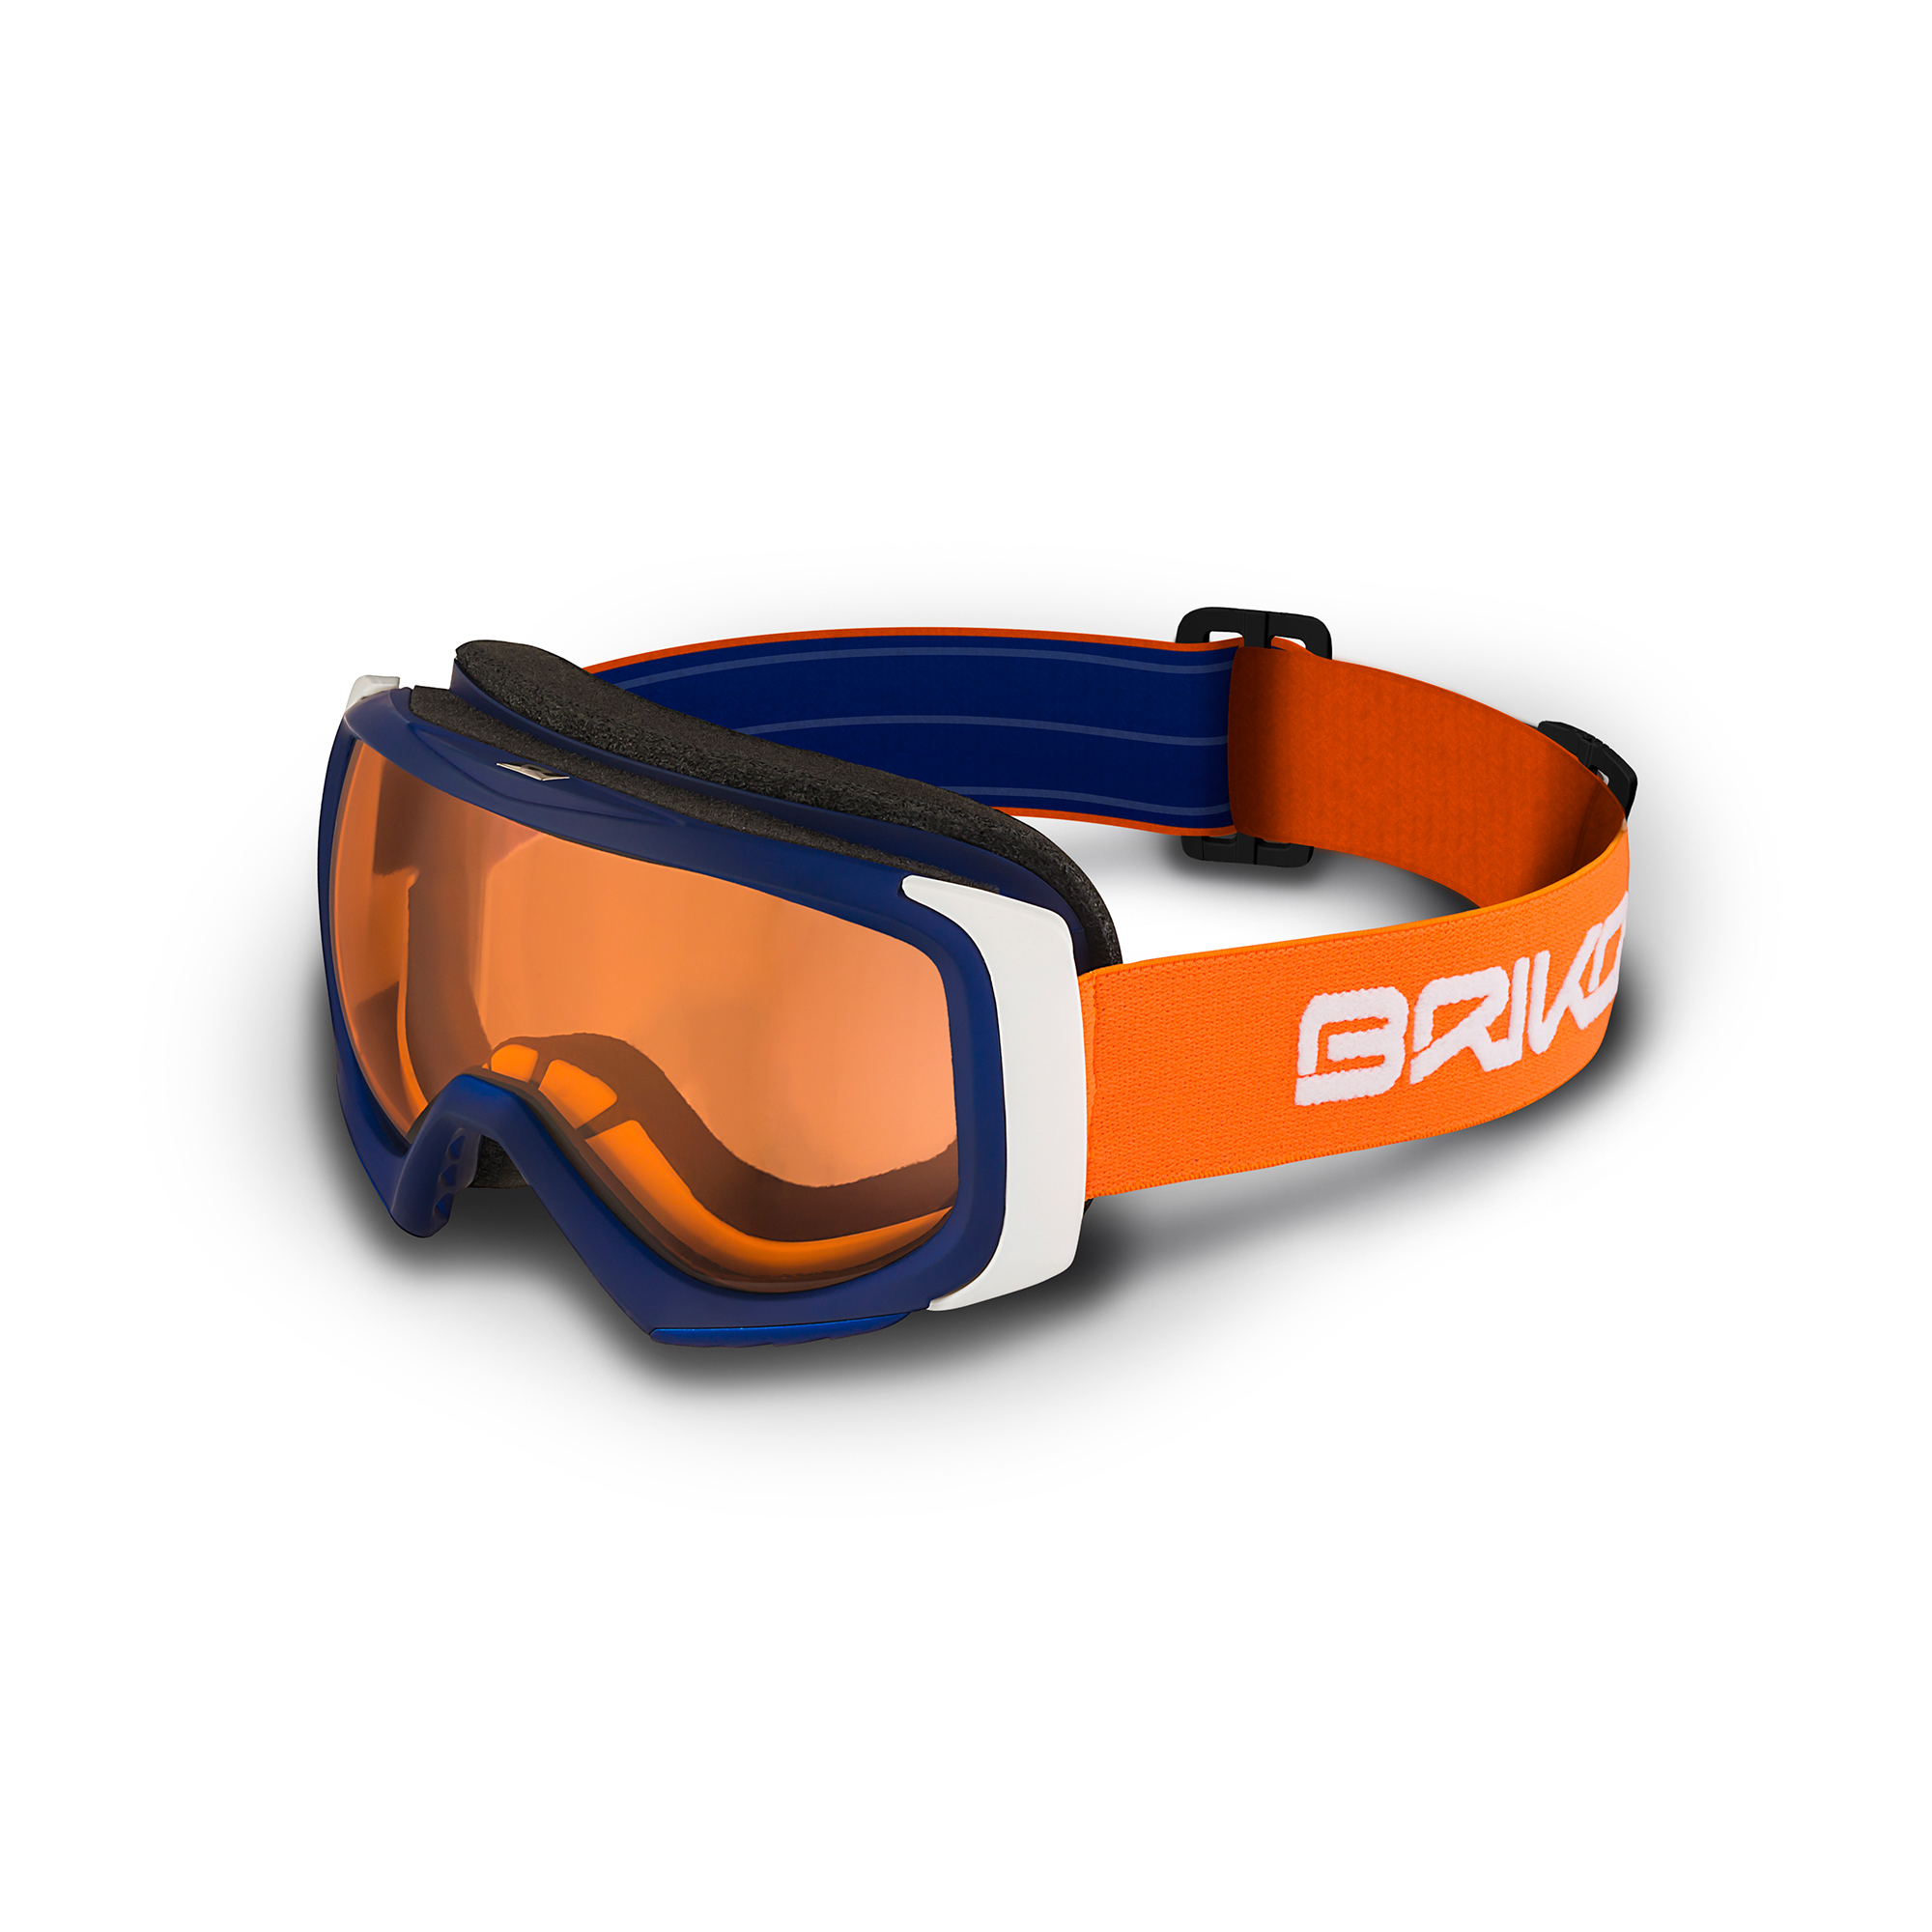  Snowboard Goggles	 -  briko Sniper 600